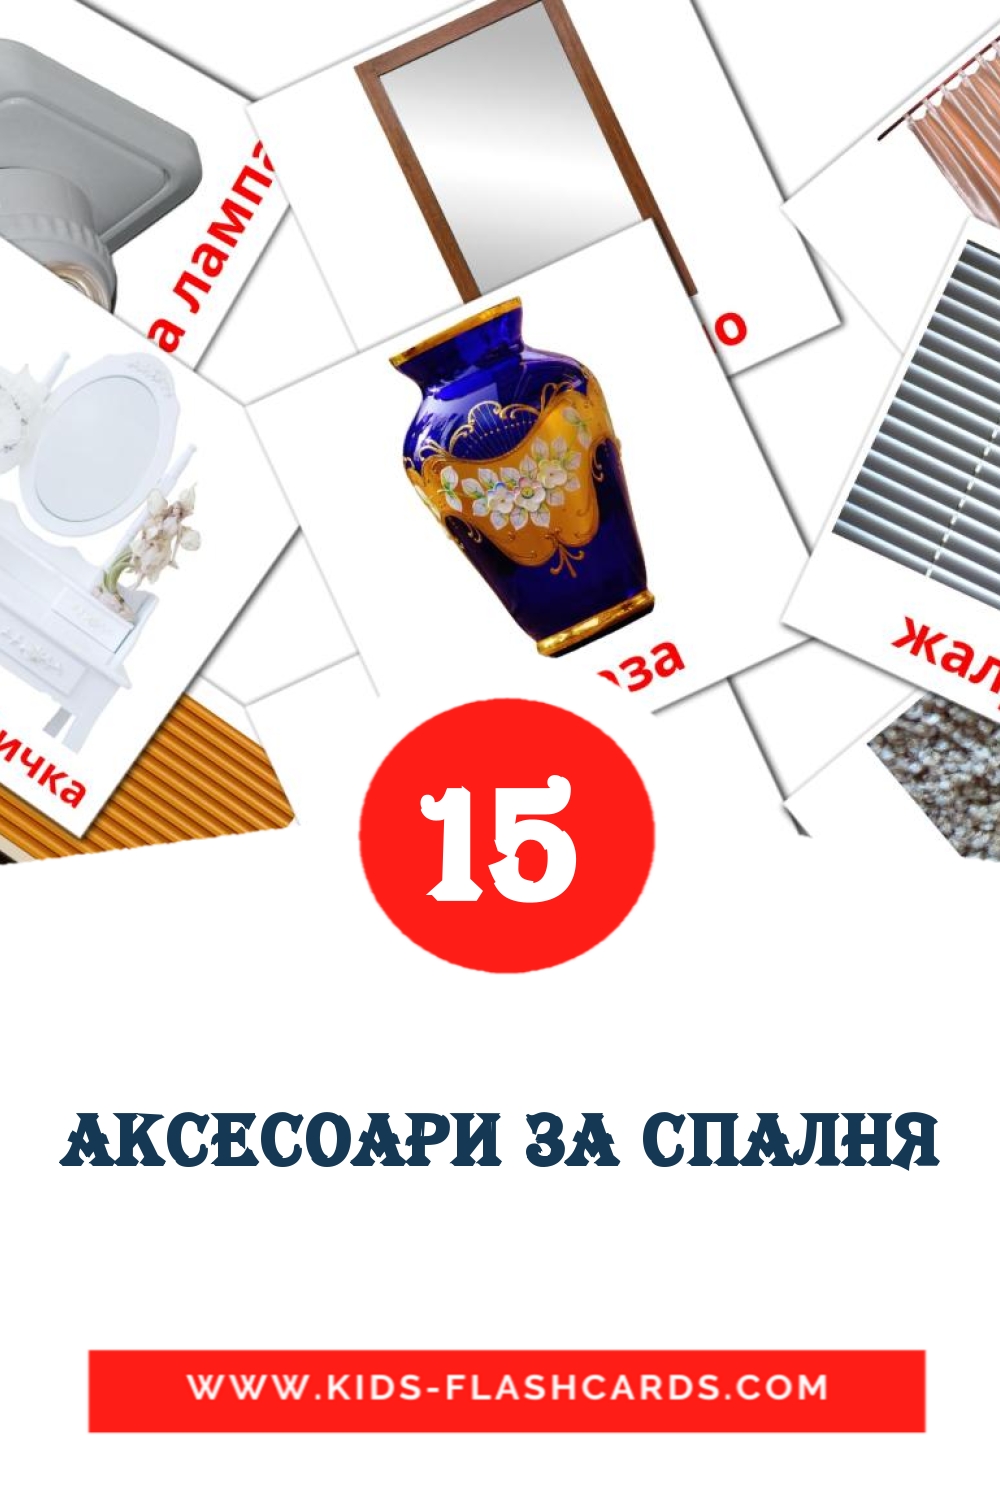 18 аксесоари за спалня Bildkarten für den Kindergarten auf Bulgarisch